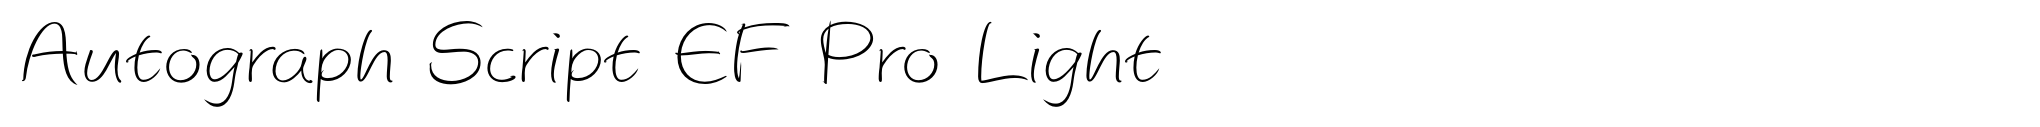 Autograph Script EF Pro Light image